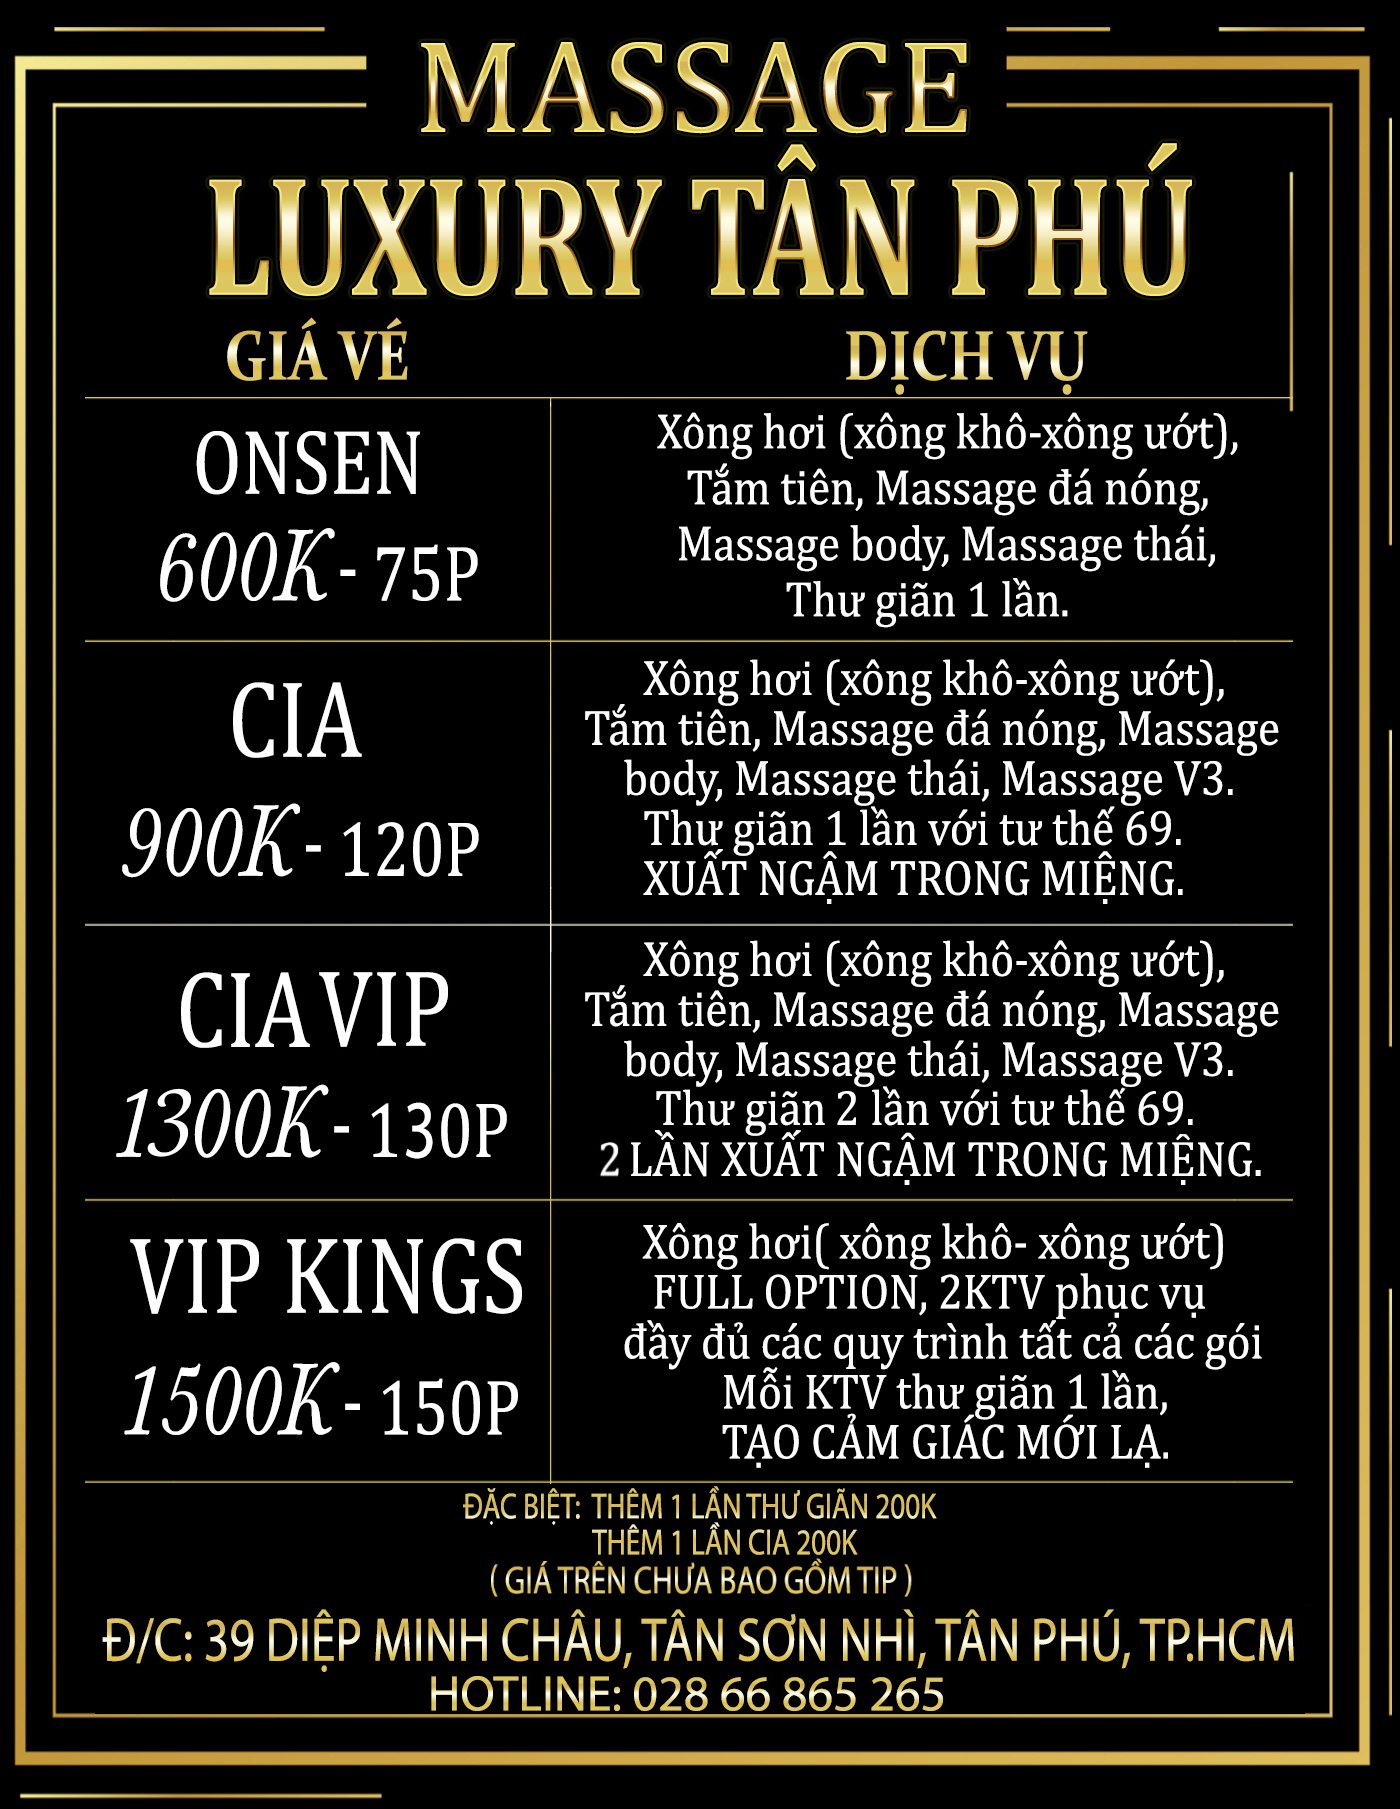 Bảng giá vé massage Luxury Tân Phú